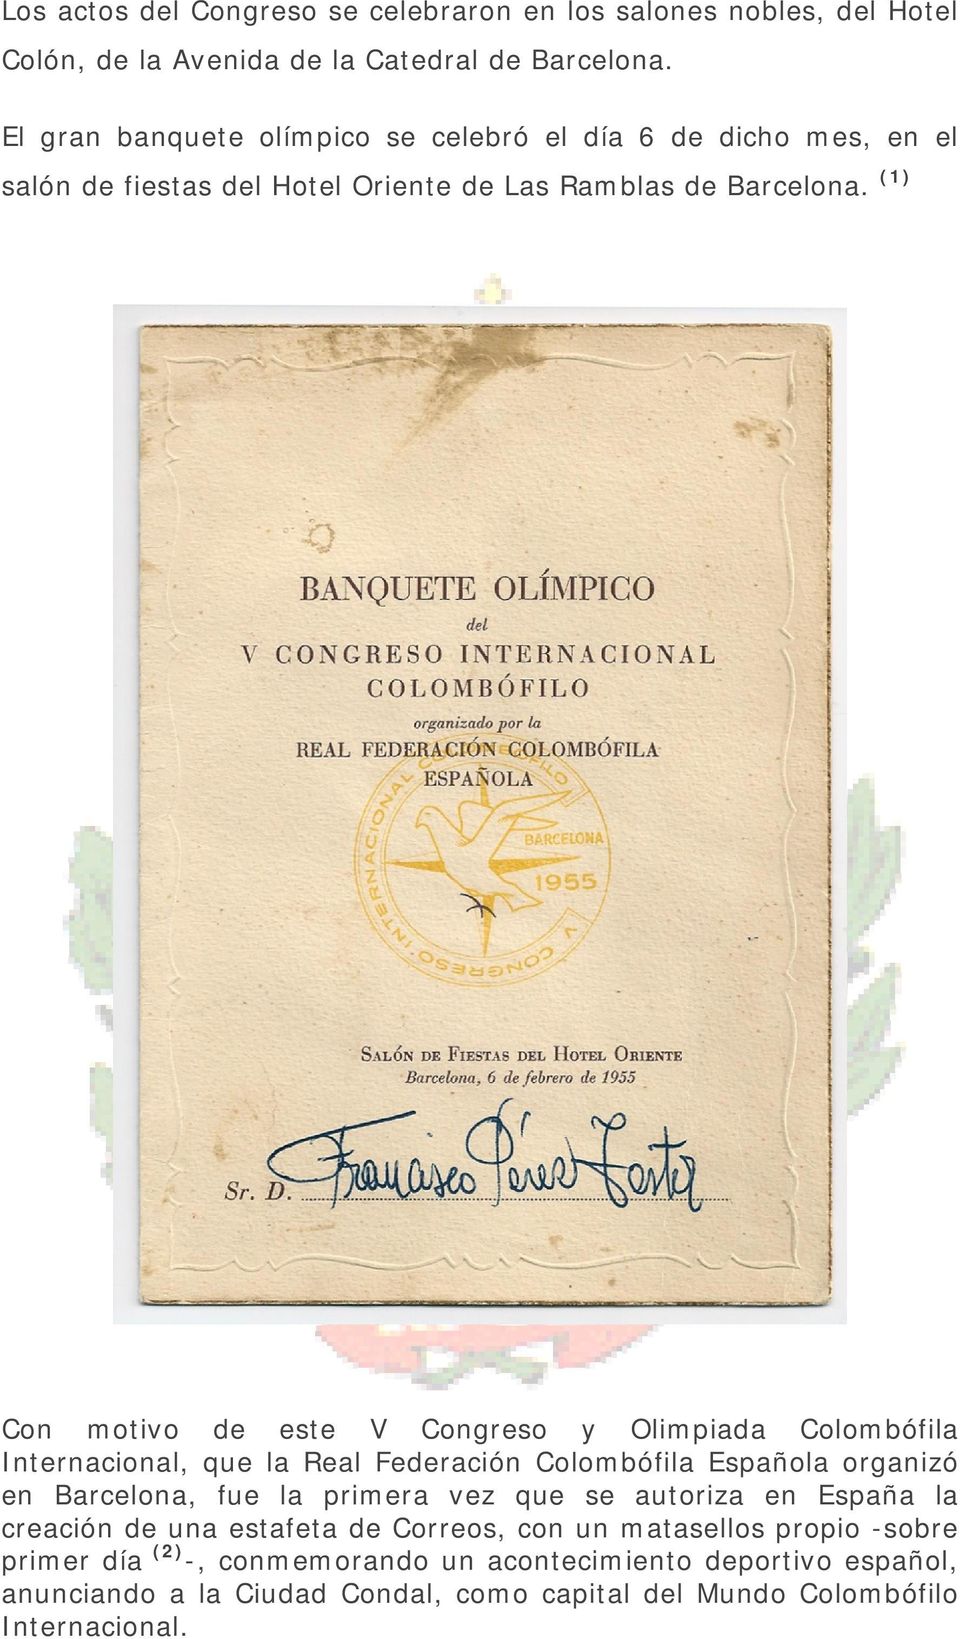 (1) Con motivo de este V Congreso y Olimpiada Colombófila Internacional, que la Real Federación Colombófila Española organizó en Barcelona, fue la primera vez que